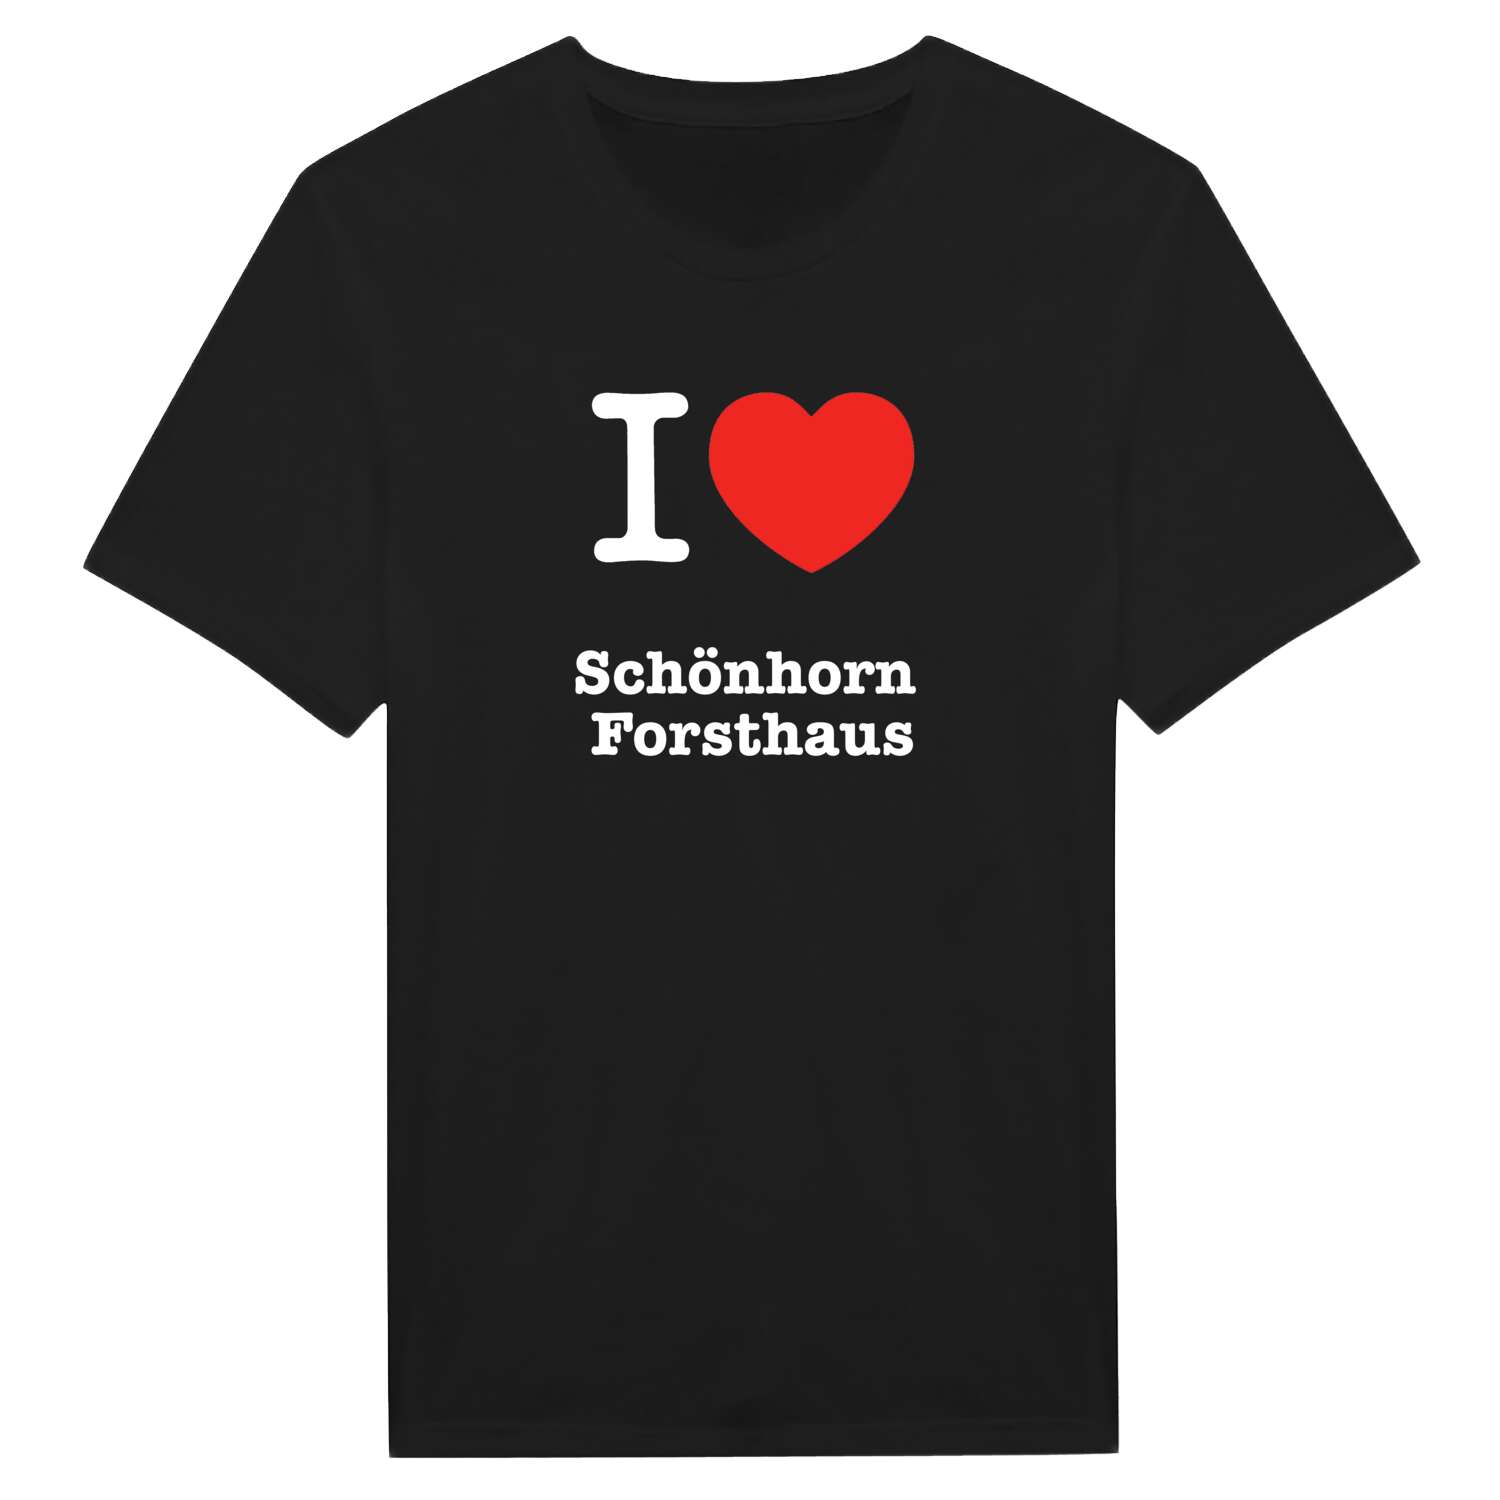 Schönhorn Forsthaus T-Shirt »I love«